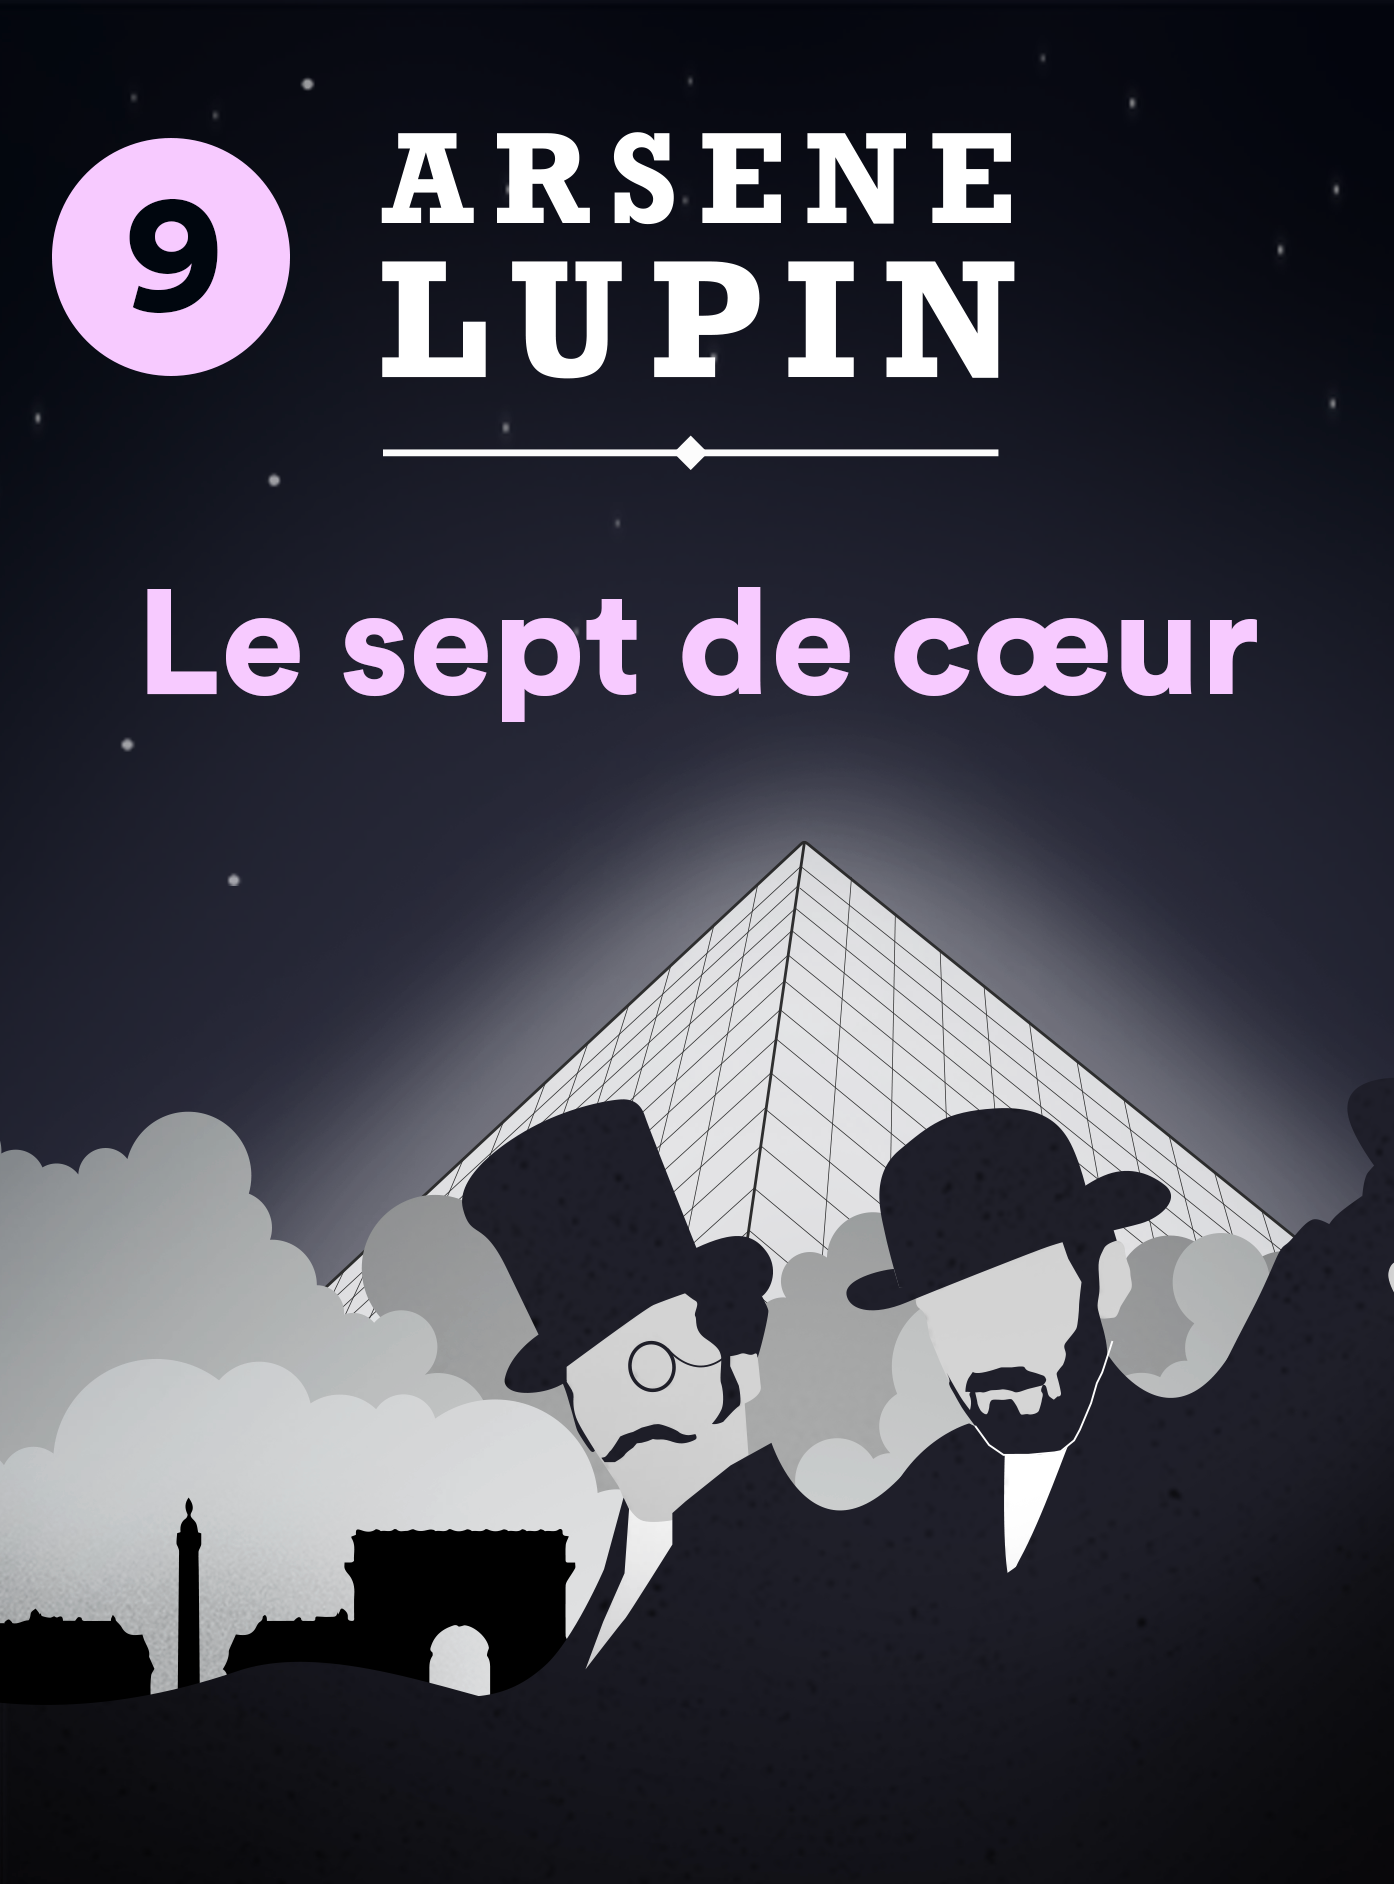 Arsène Lupin et le sept de coeur